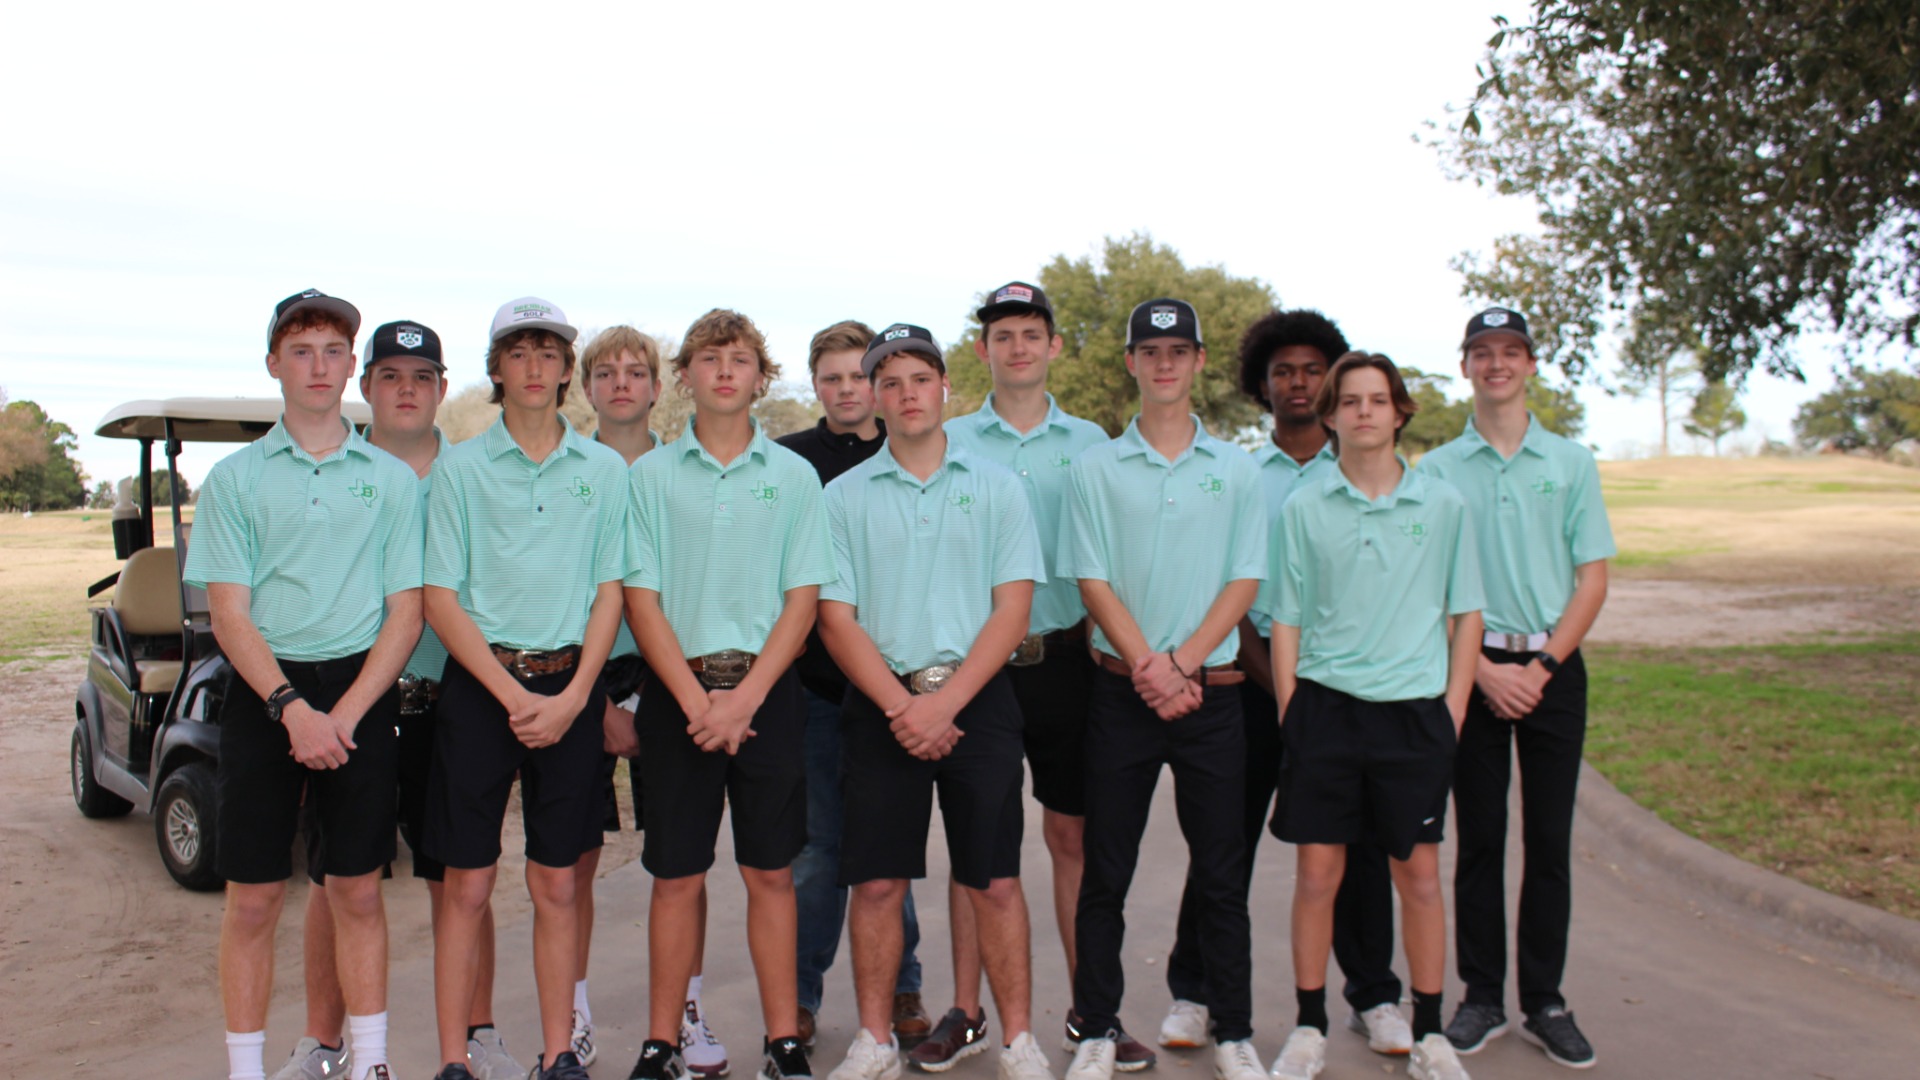 Slide 6 - Boys Golf Team